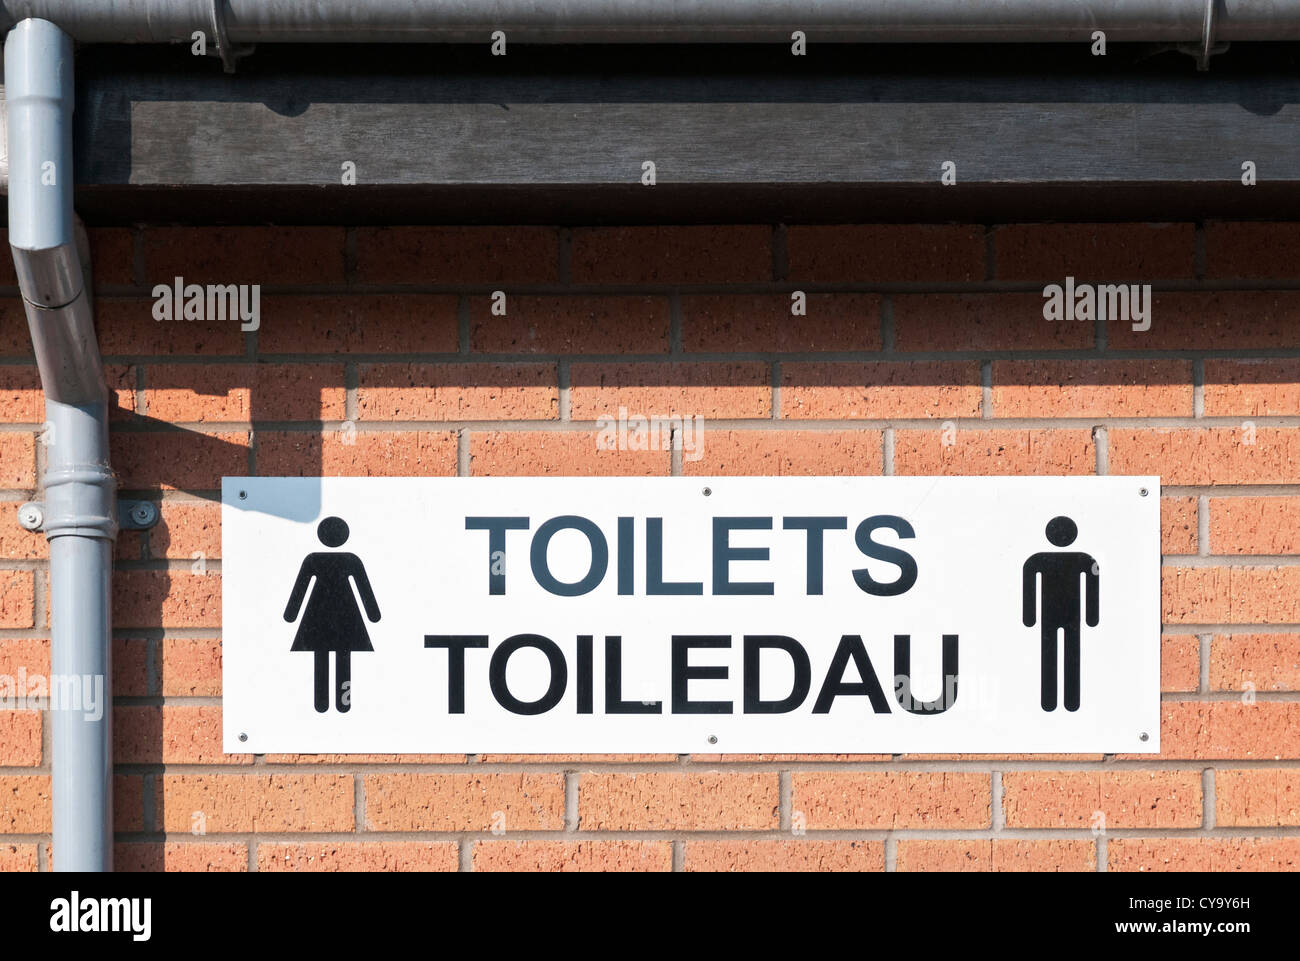 Pays de Galles, Cardiff, Bute Park, toilettes publiques bilingue en anglais et gallois signe Banque D'Images